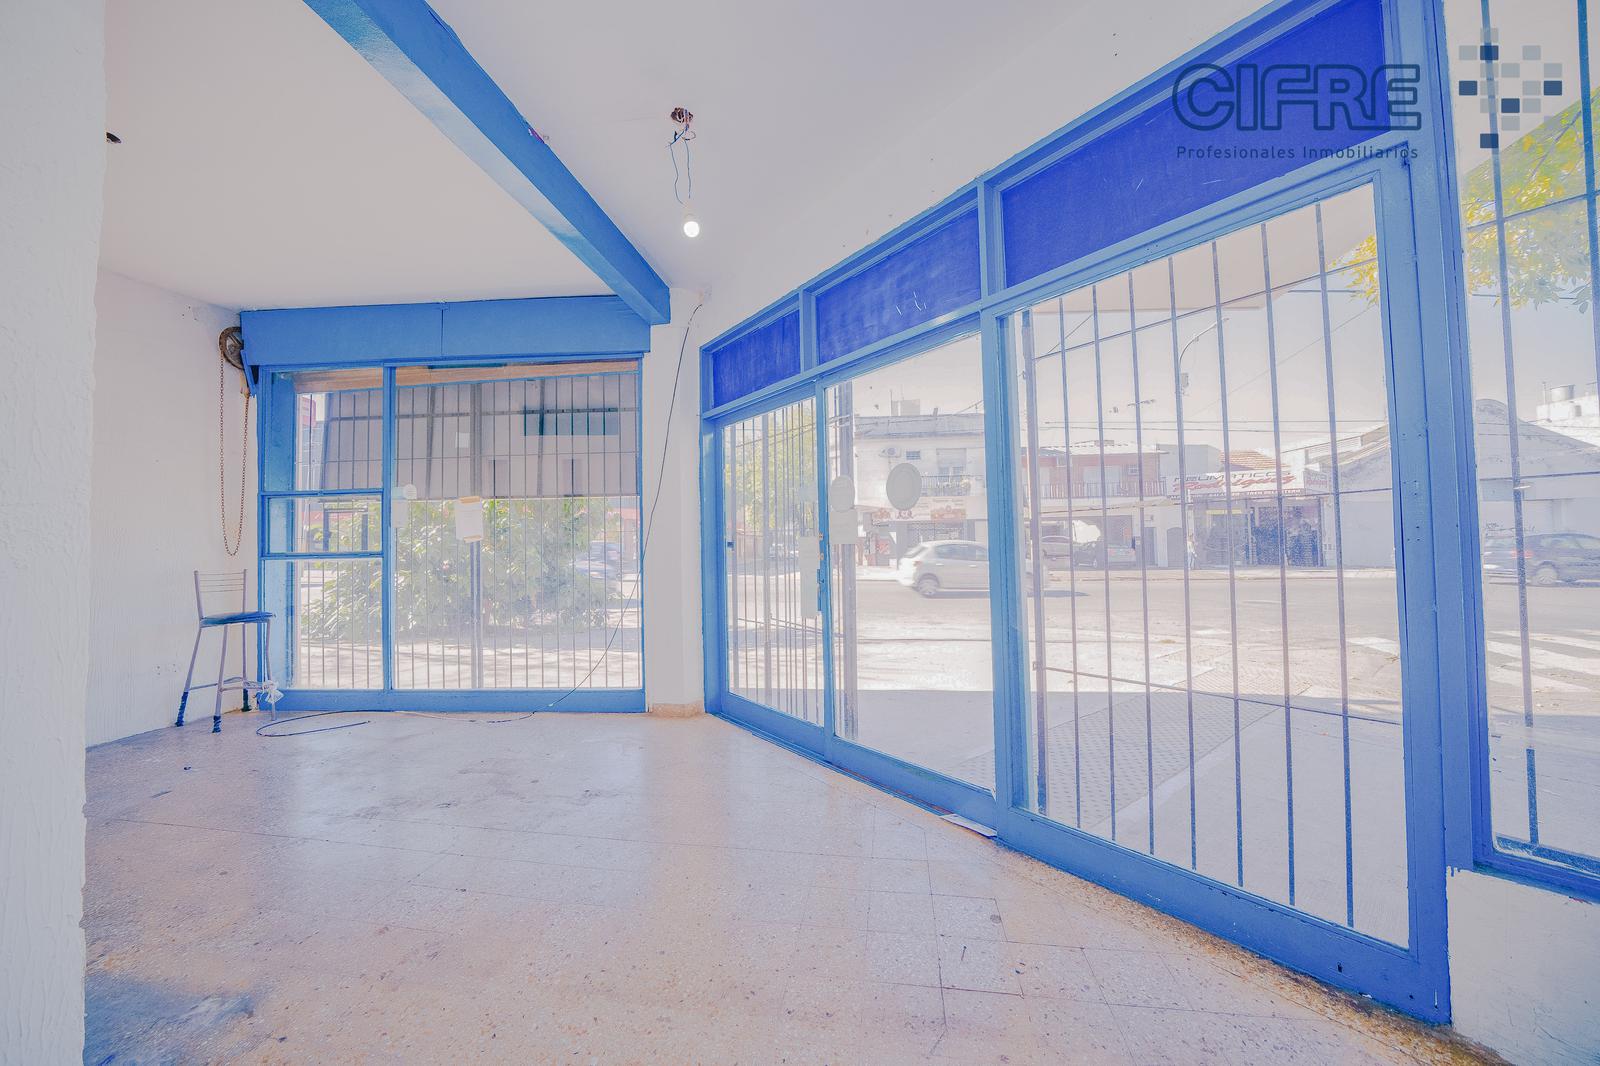 #5058304 | Alquiler | Local | Villa Pueyrredon (Cifre Profesionales Inmobiliarios)